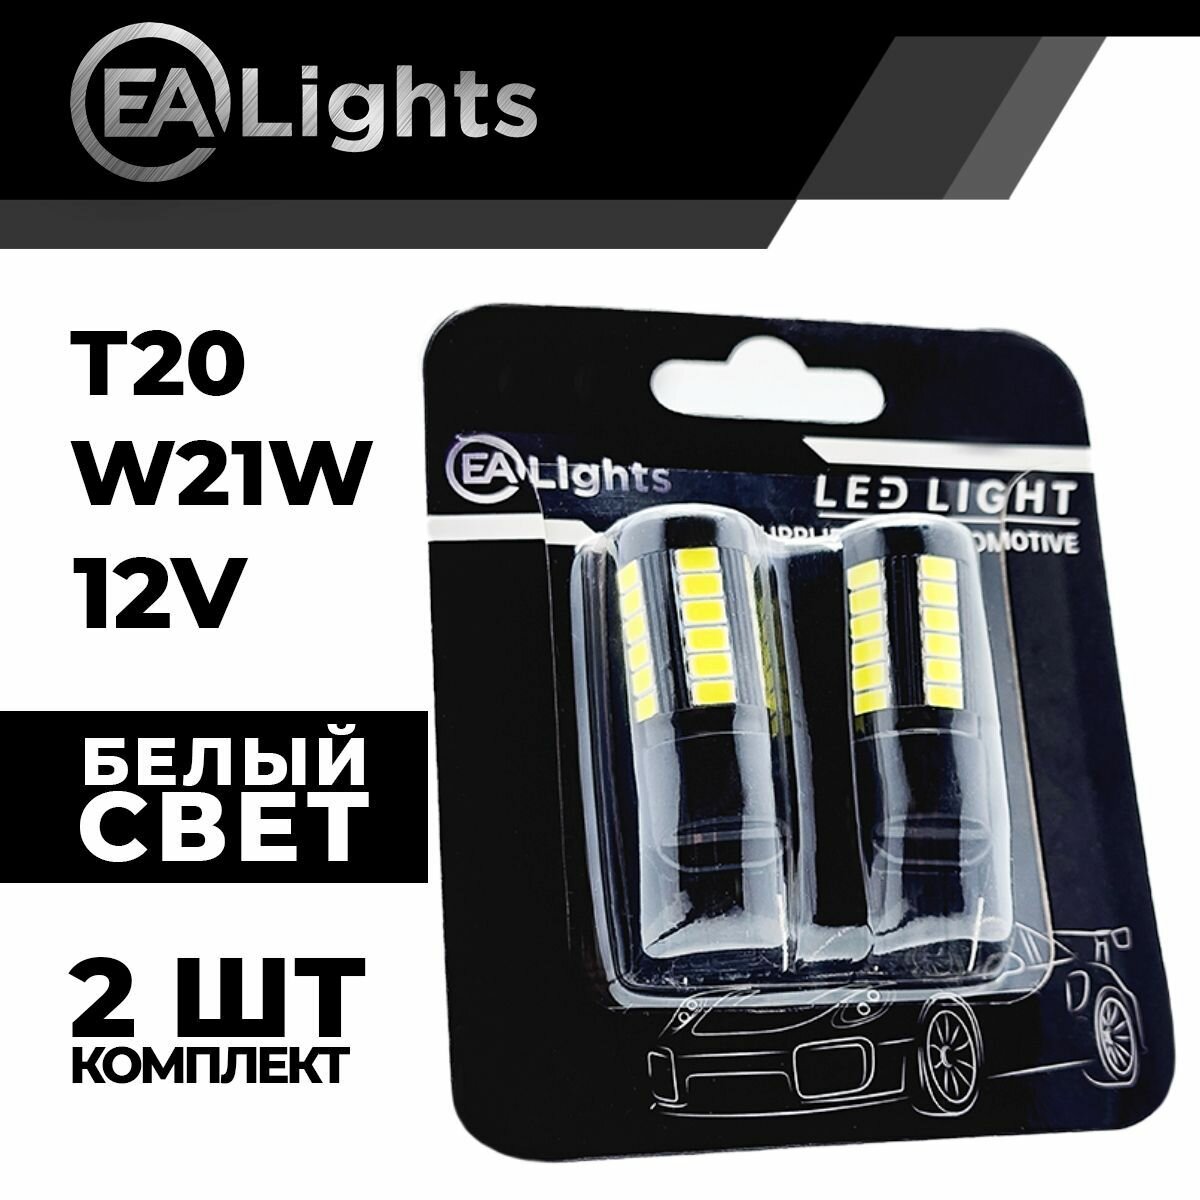 Автомобильная светодиодная LED лампа T20 W21W (чип 5630-33) для габаритных огней и ДХО, 12в белый свет, 2 шт